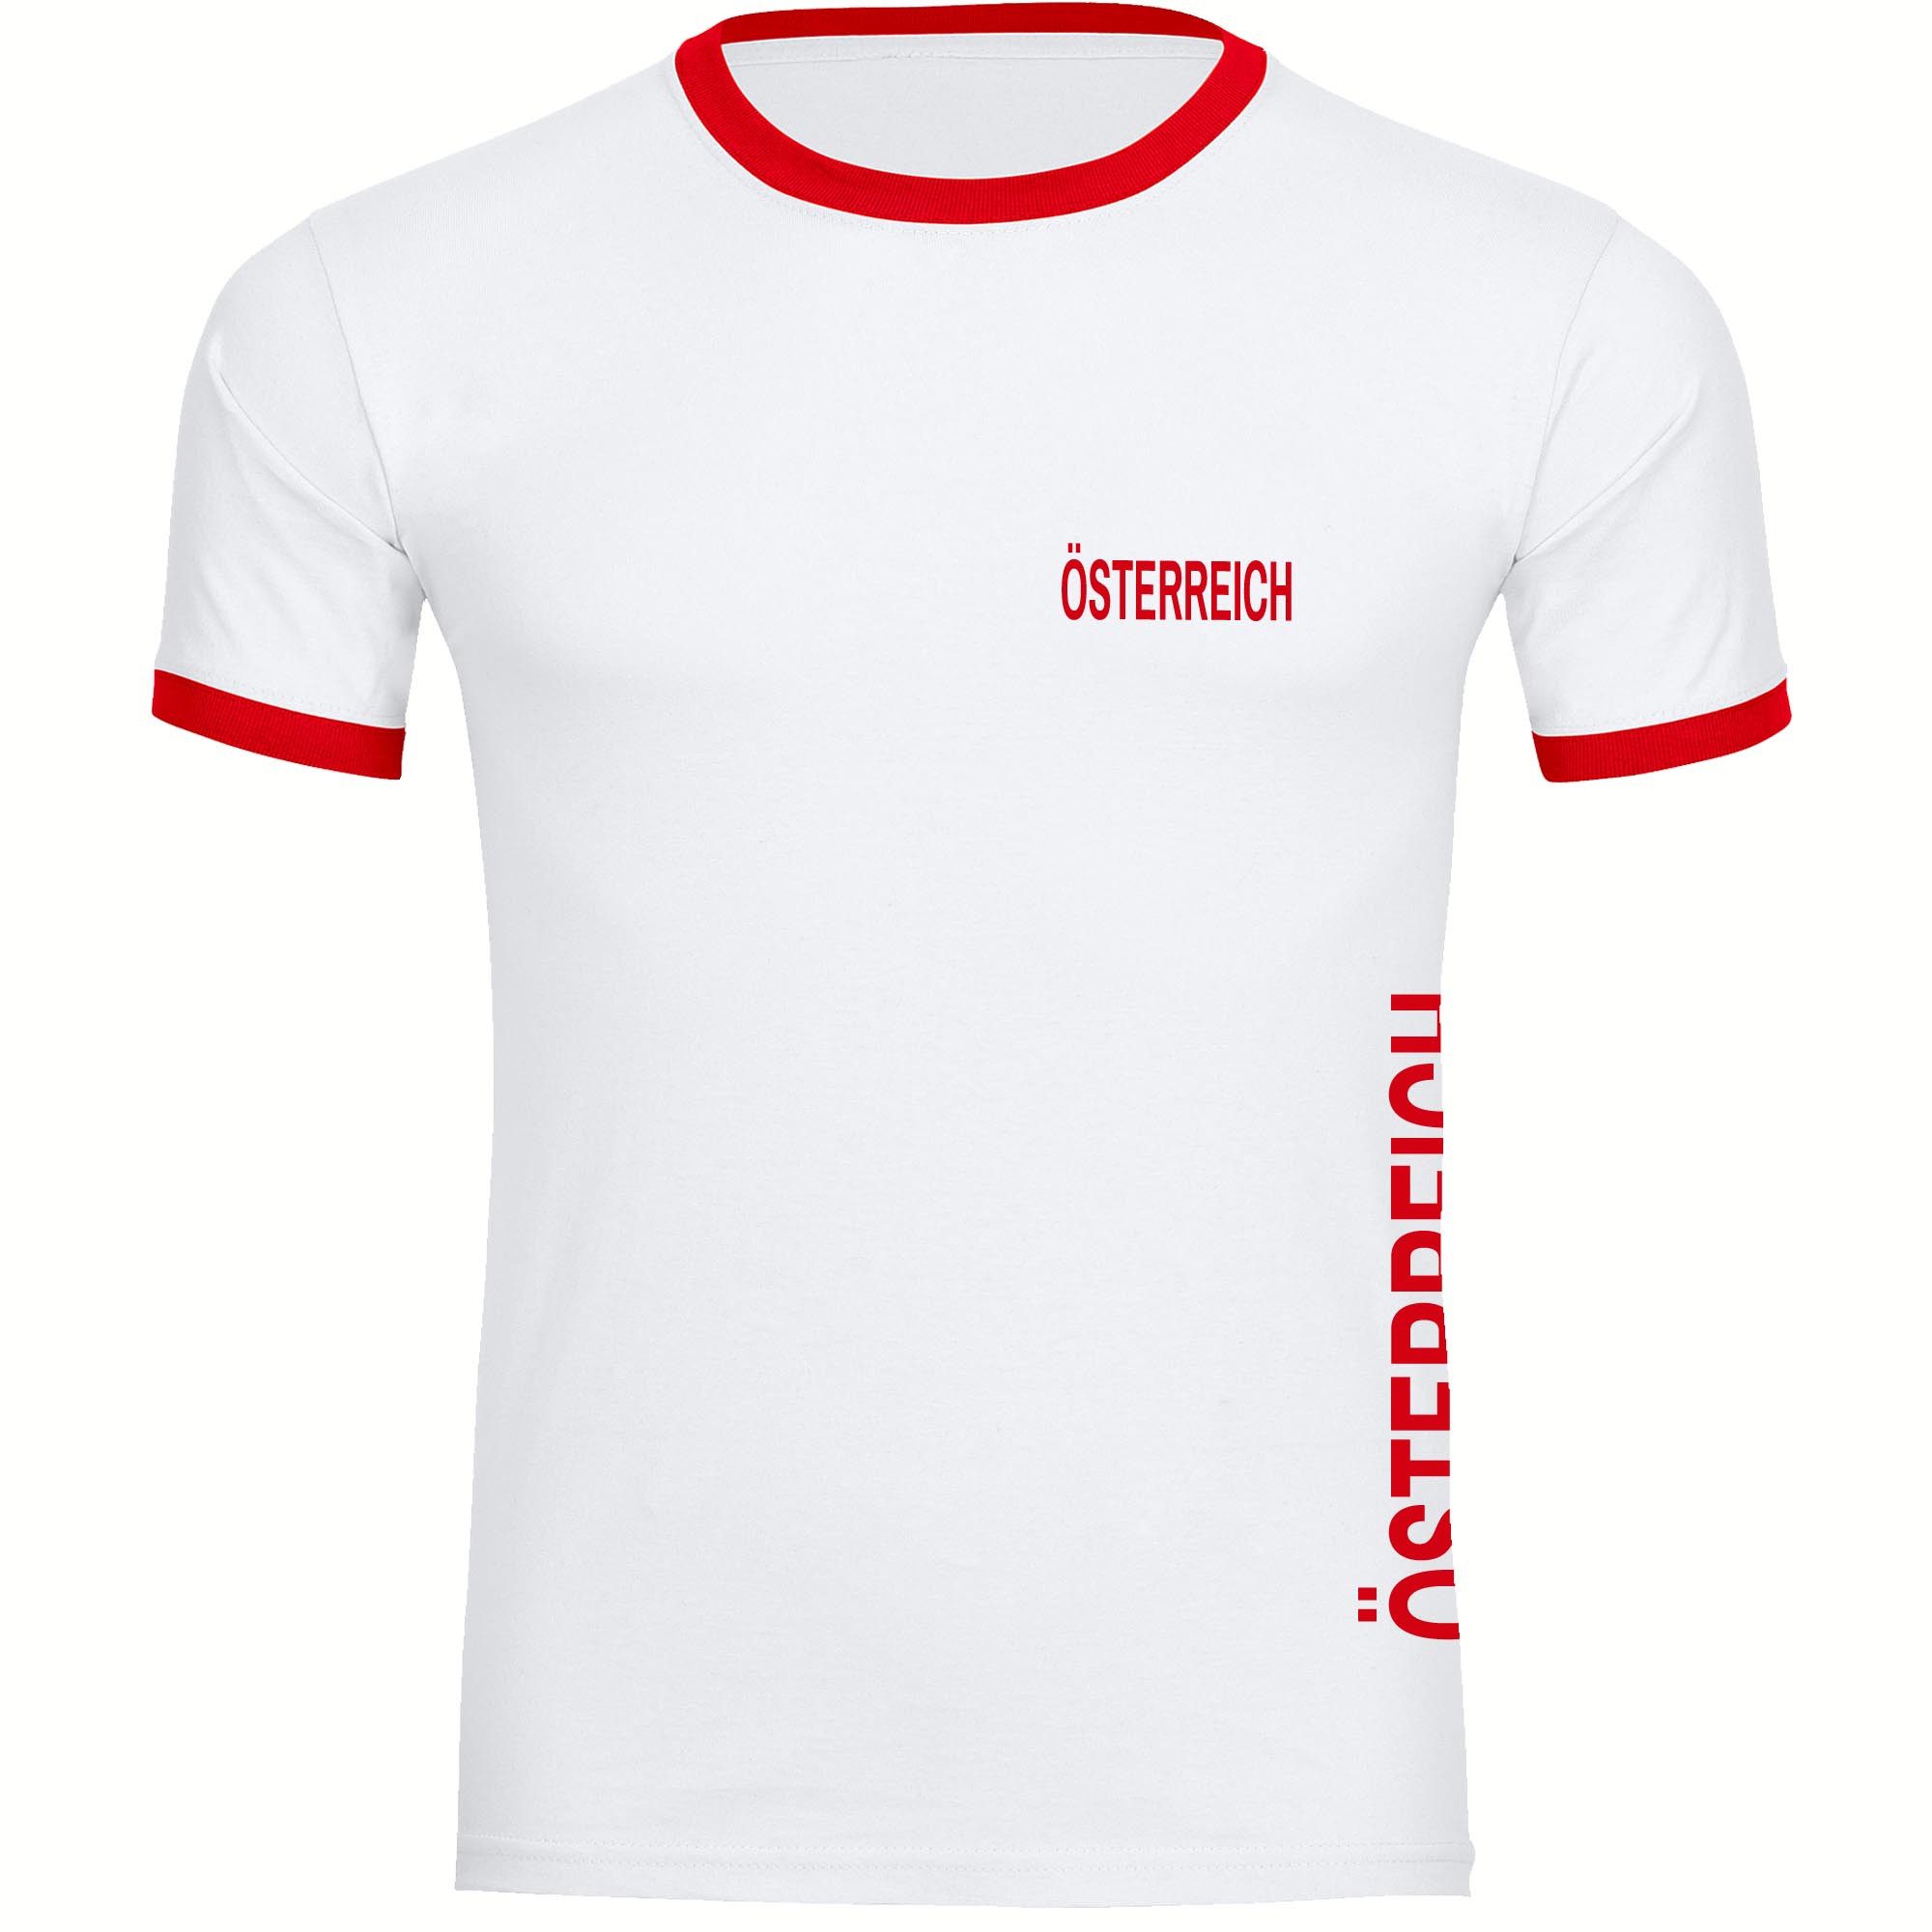 multifanshop T-Shirt Kontrast Österreich - Brust & Seite - Männer